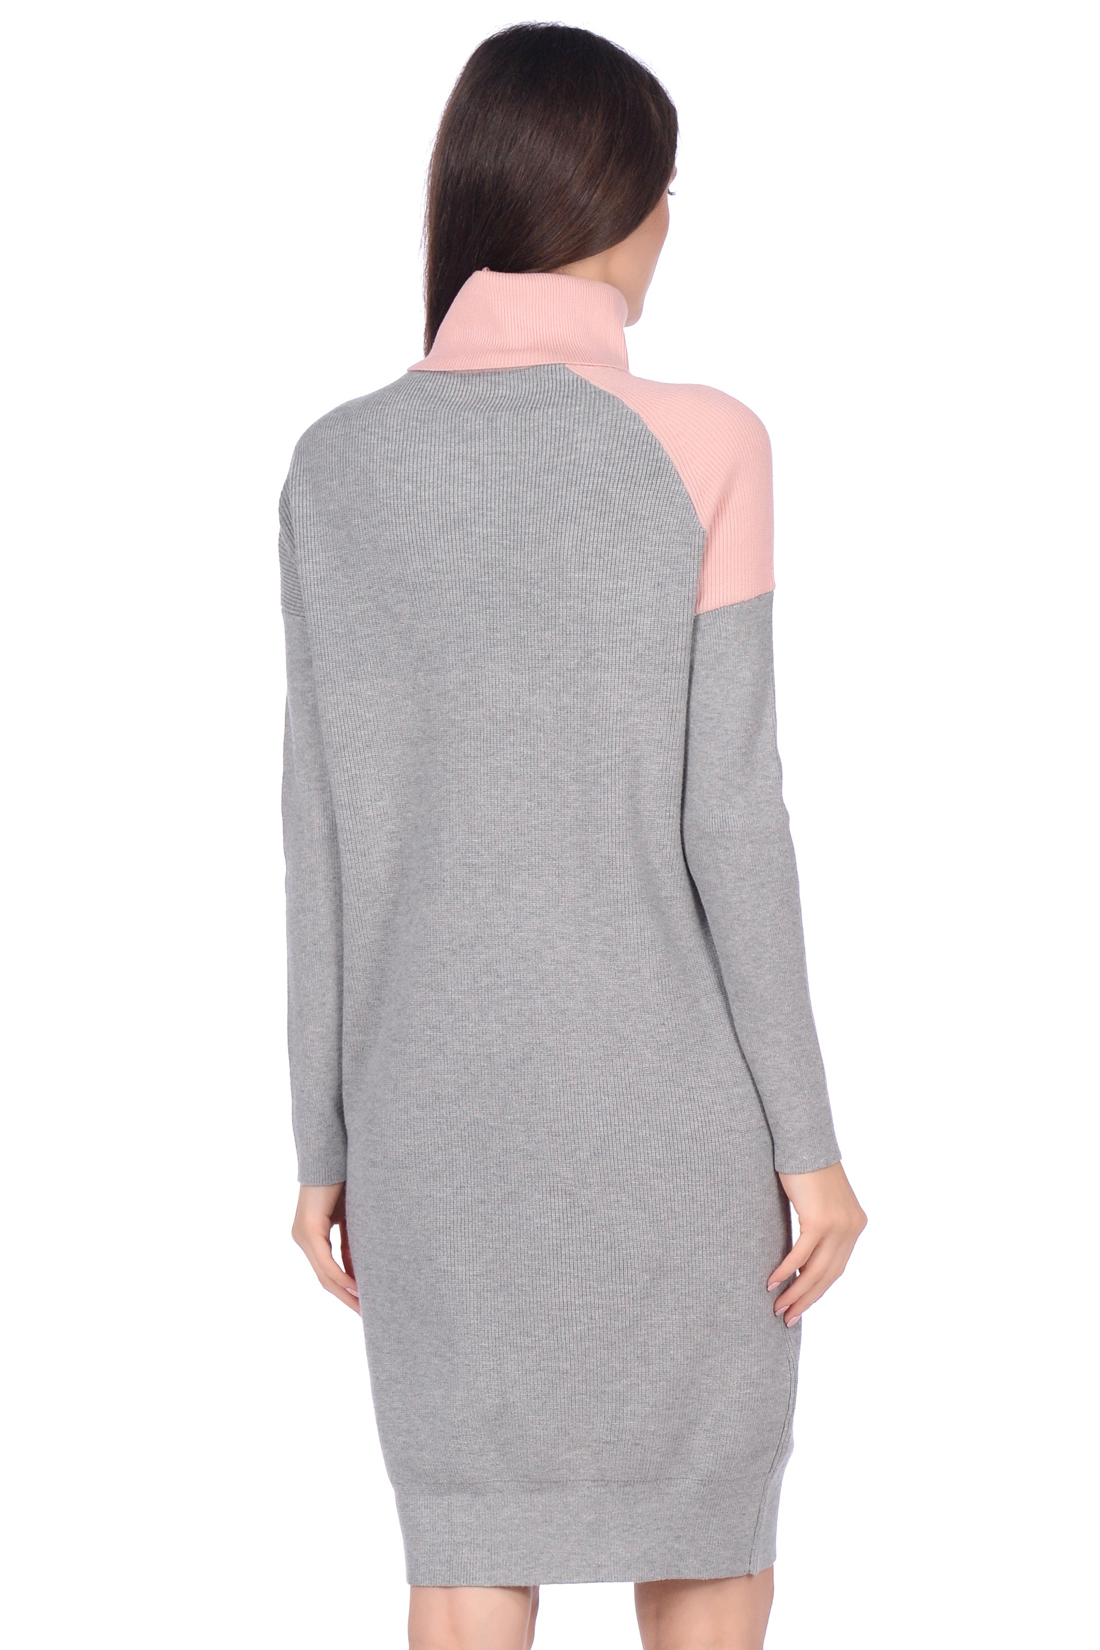 Платье-свитер в стиле color block (арт. baon B459530), размер M, цвет белый Платье-свитер в стиле color block (арт. baon B459530) - фото 2